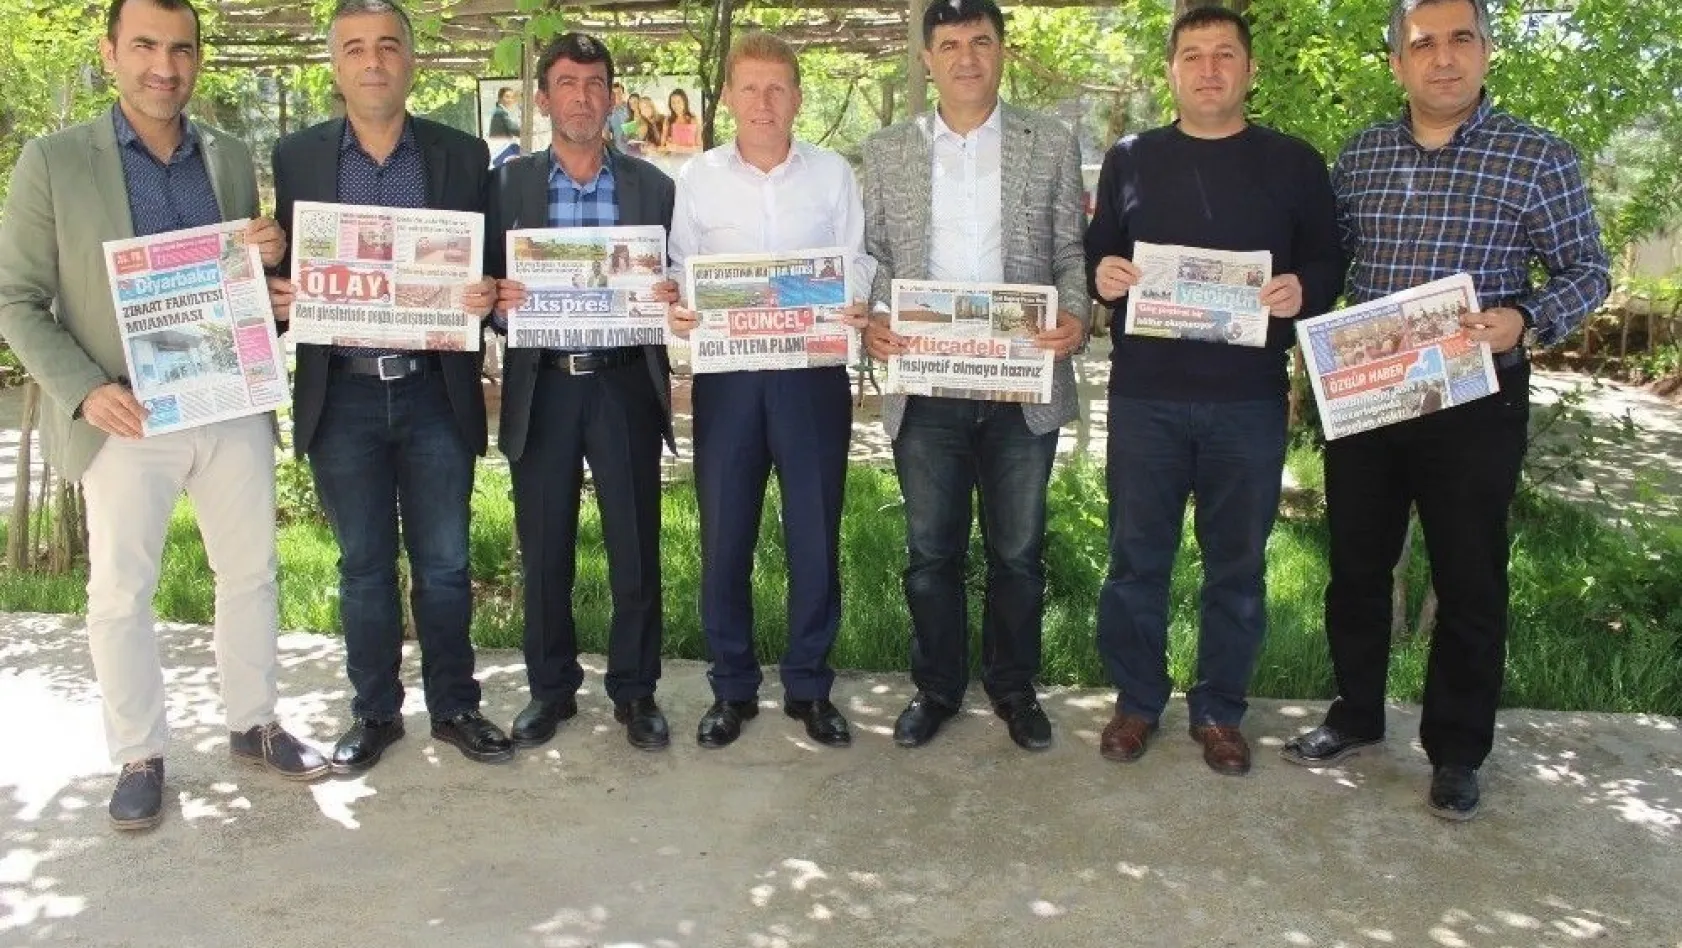 Güneydoğu TÜİK'ten yerel gazetelere destek kampanyası
